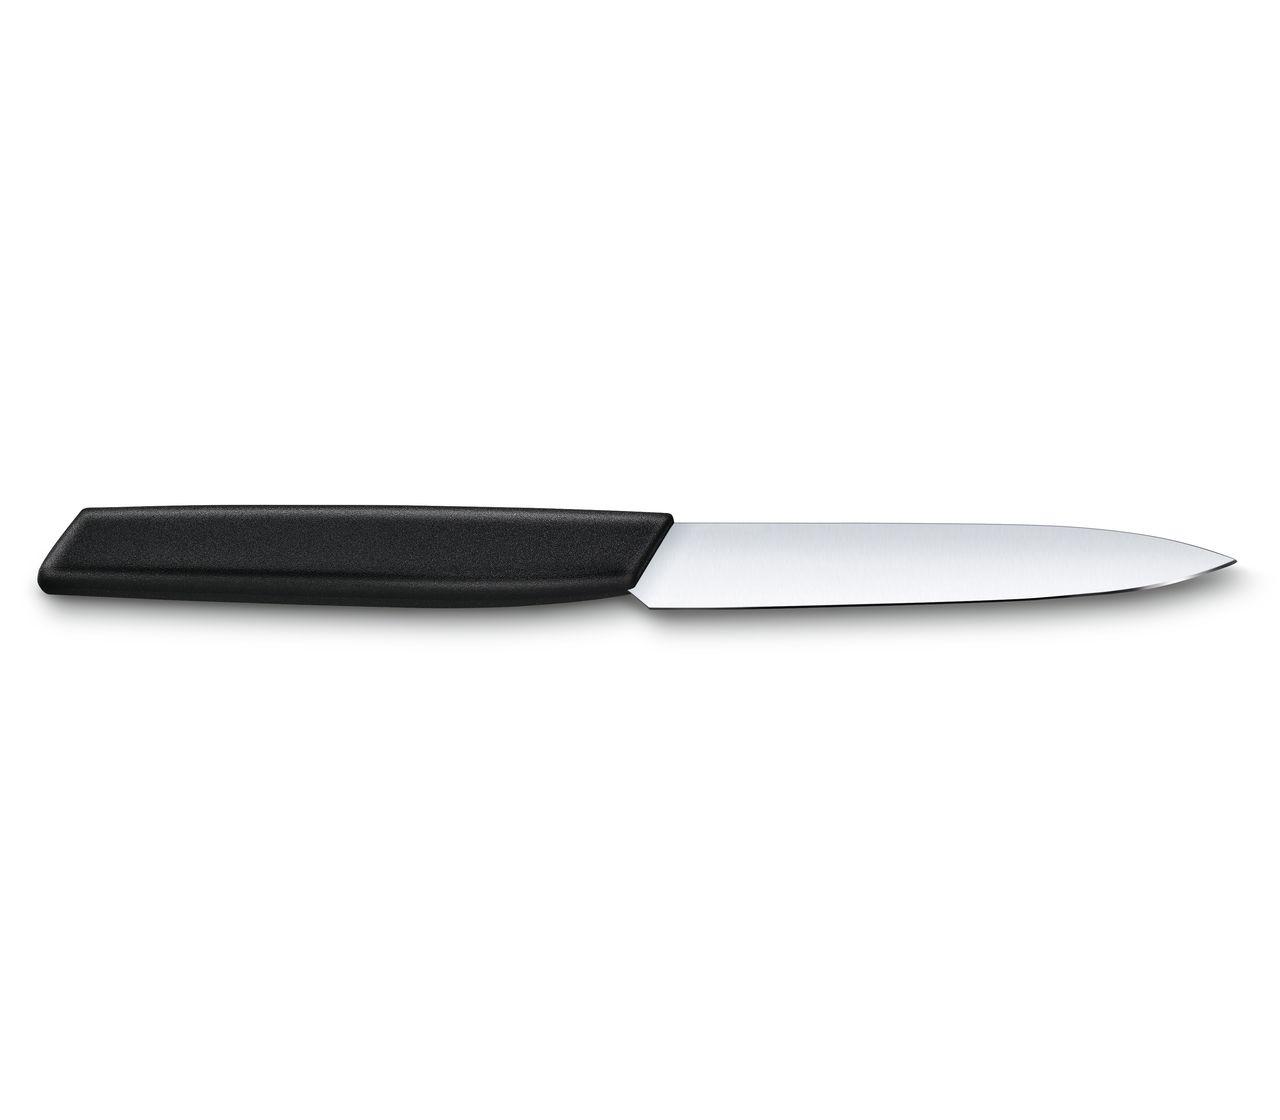 Victorinox - Couteau d'office Grand Maître 10cm - Les couteaux